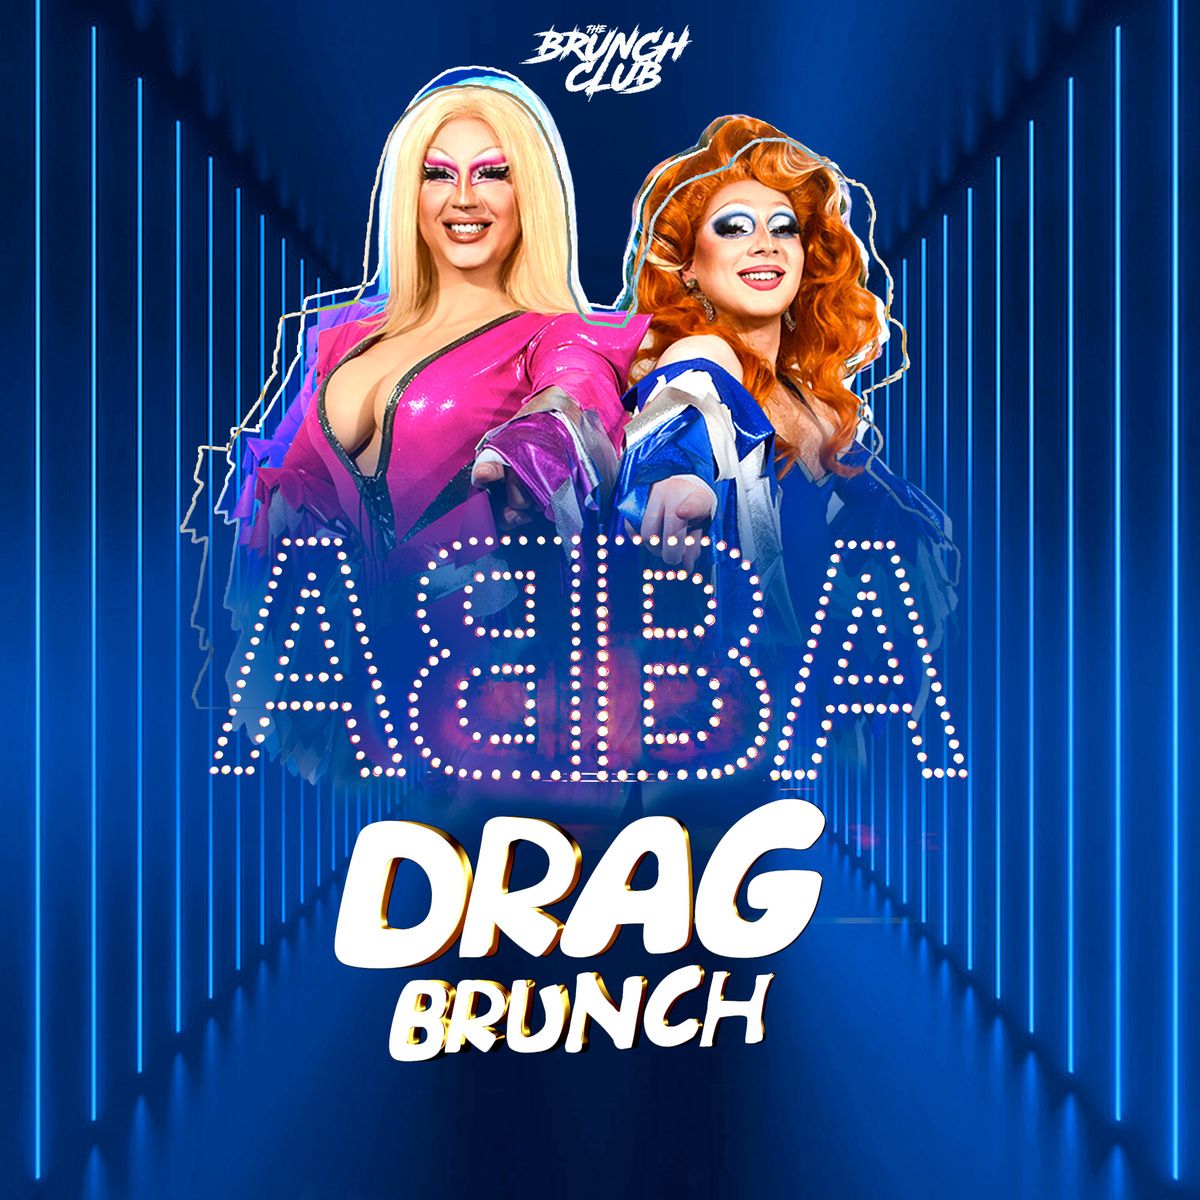 ABBA Drag Boozy Brunch - Edinburgh